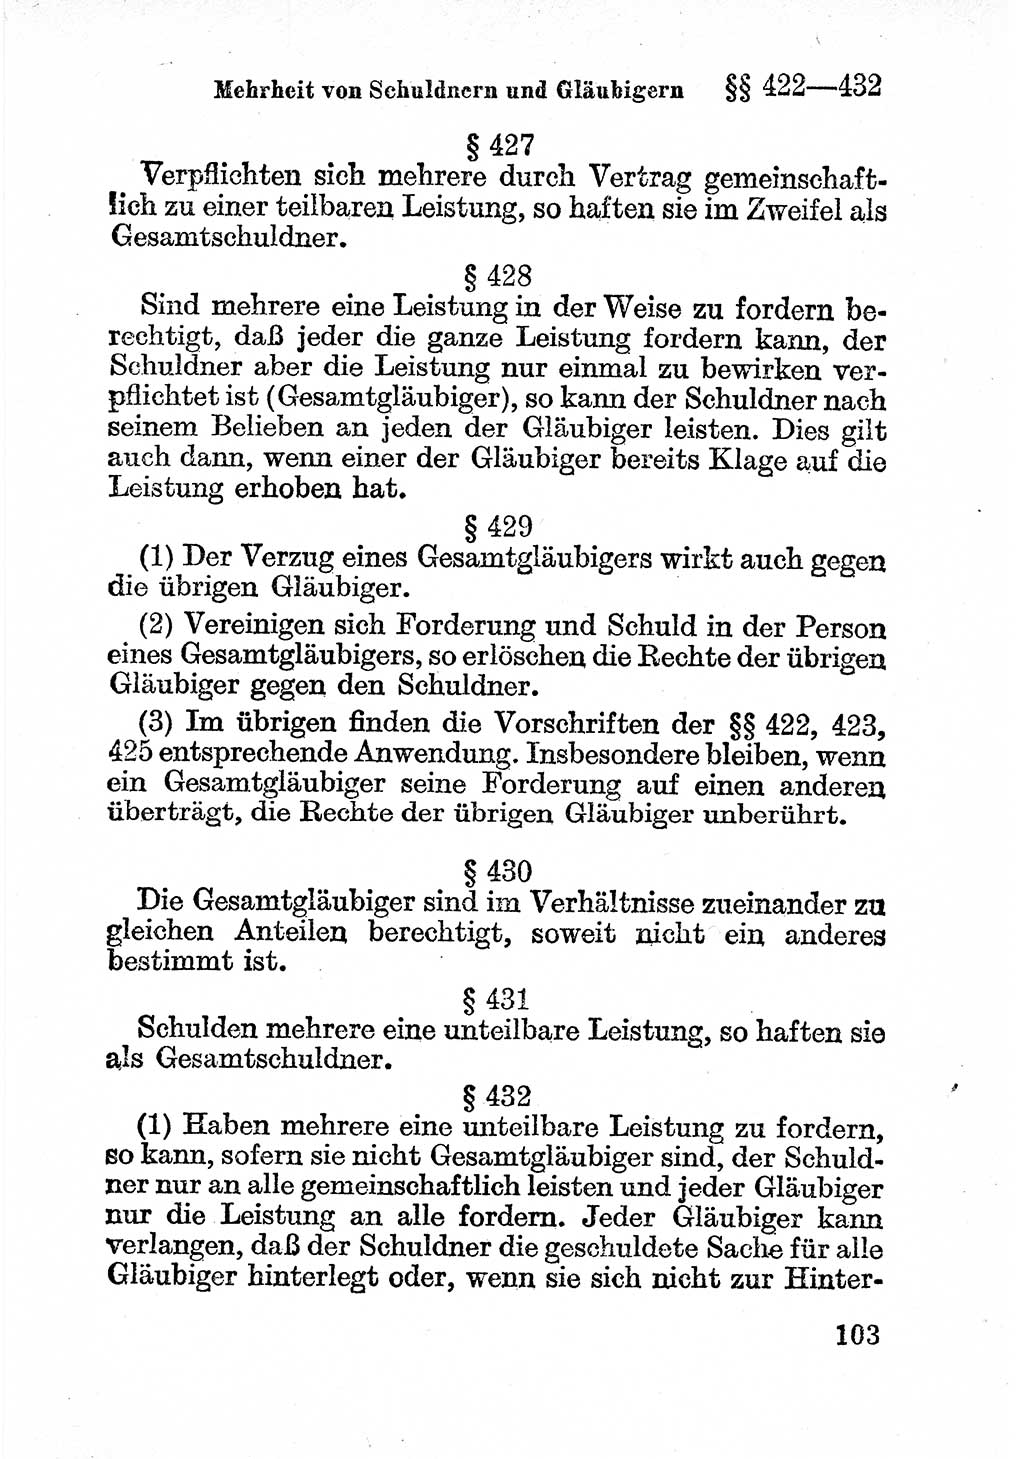 Bürgerliches Gesetzbuch (BGB) nebst wichtigen Nebengesetzen [Deutsche Demokratische Republik (DDR)] 1956, Seite 103 (BGB Nebenges. DDR 1956, S. 103)